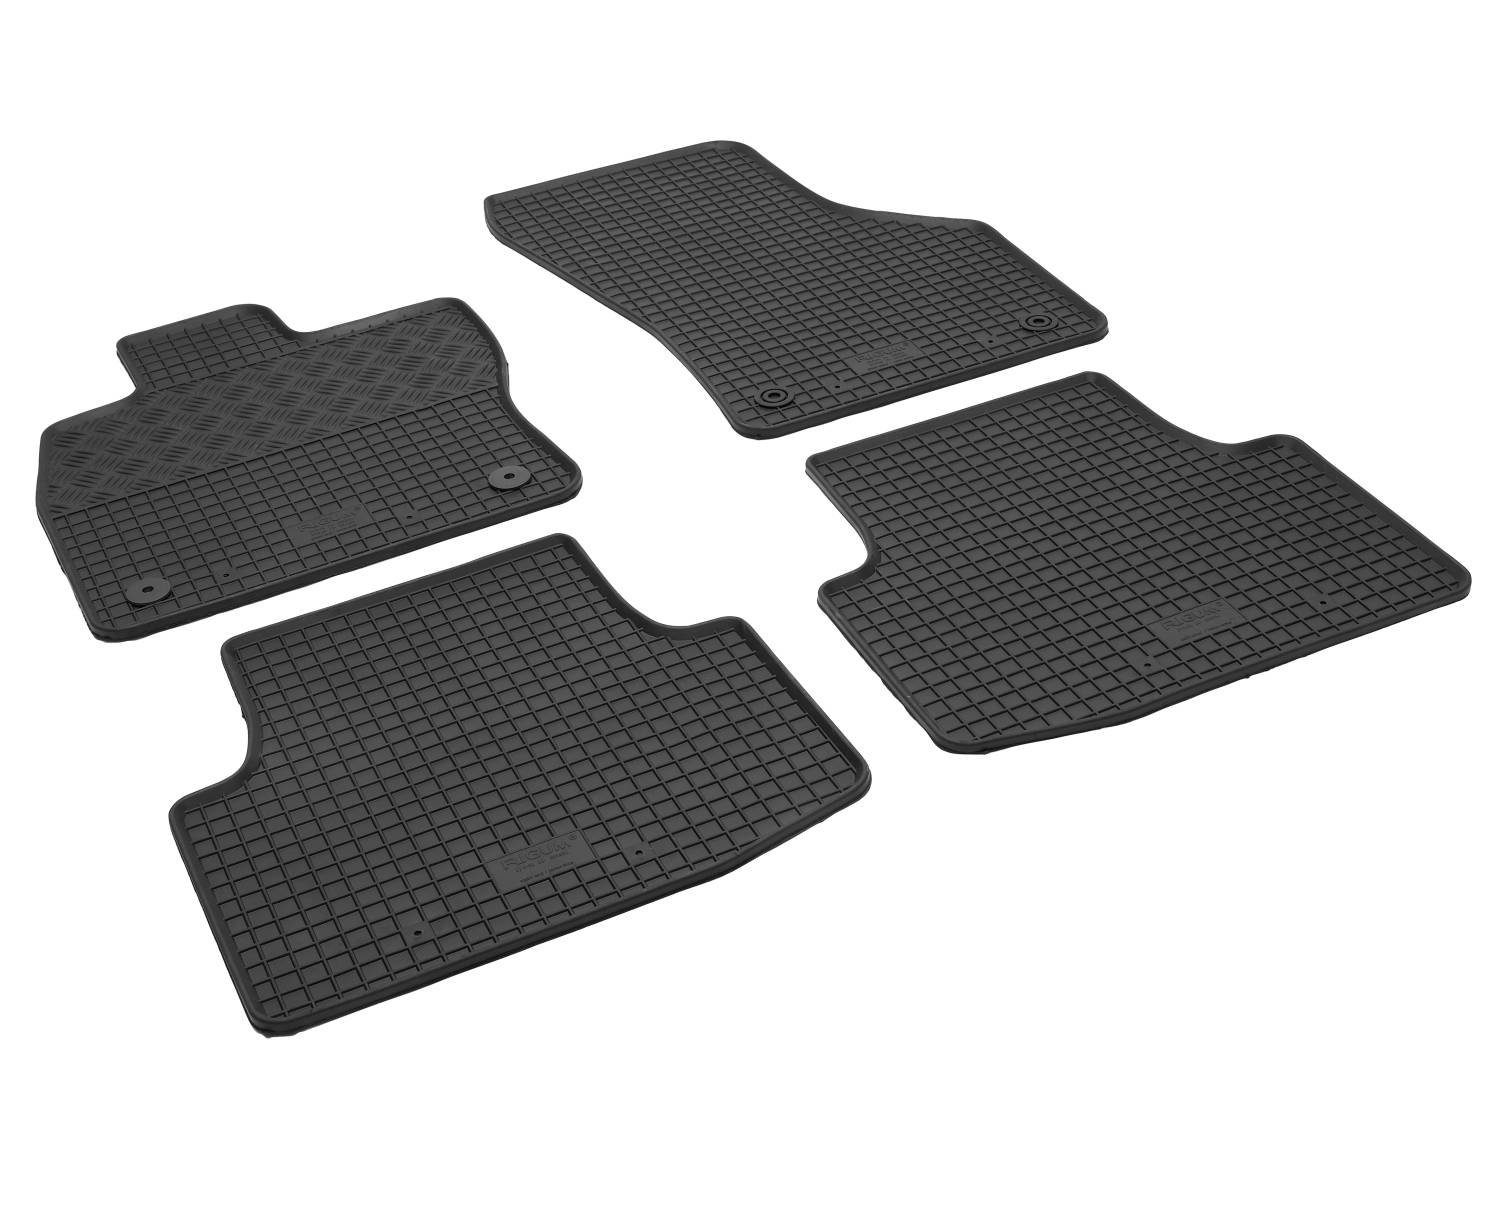 Variant ab Auto-Fußmatten Passat Gummi-Fußmatten AZUGA für Stufenheck,5-türer 3G/B8 VW 4-türer Variant Passat/Passat 11/2014, passend VW für